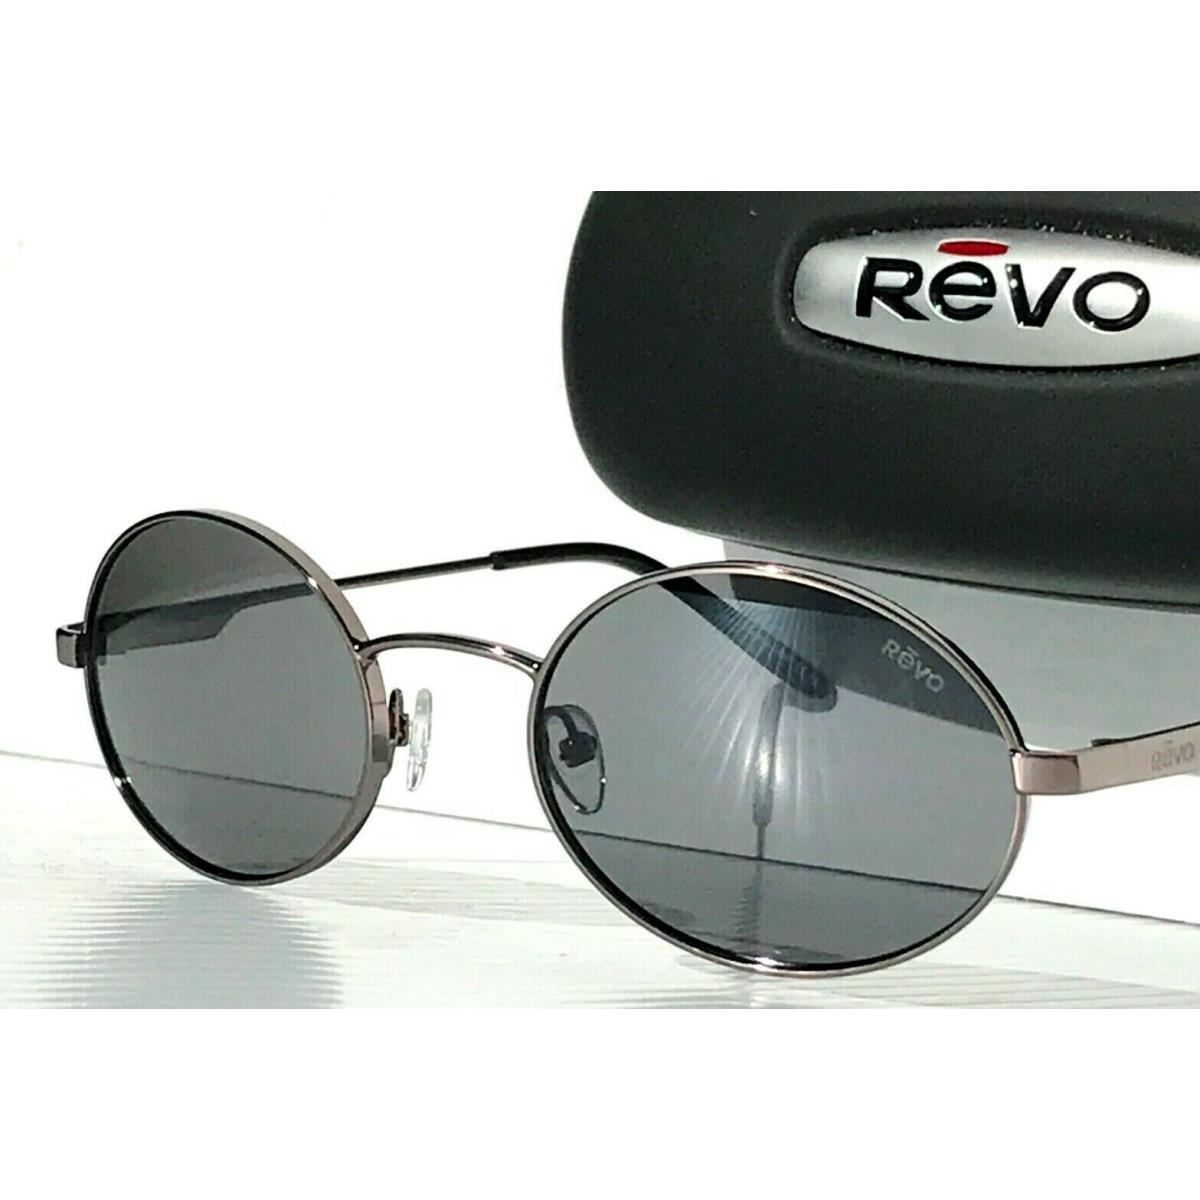 Revo sunglasses LUNAR - Silver Frame, Gray Lens